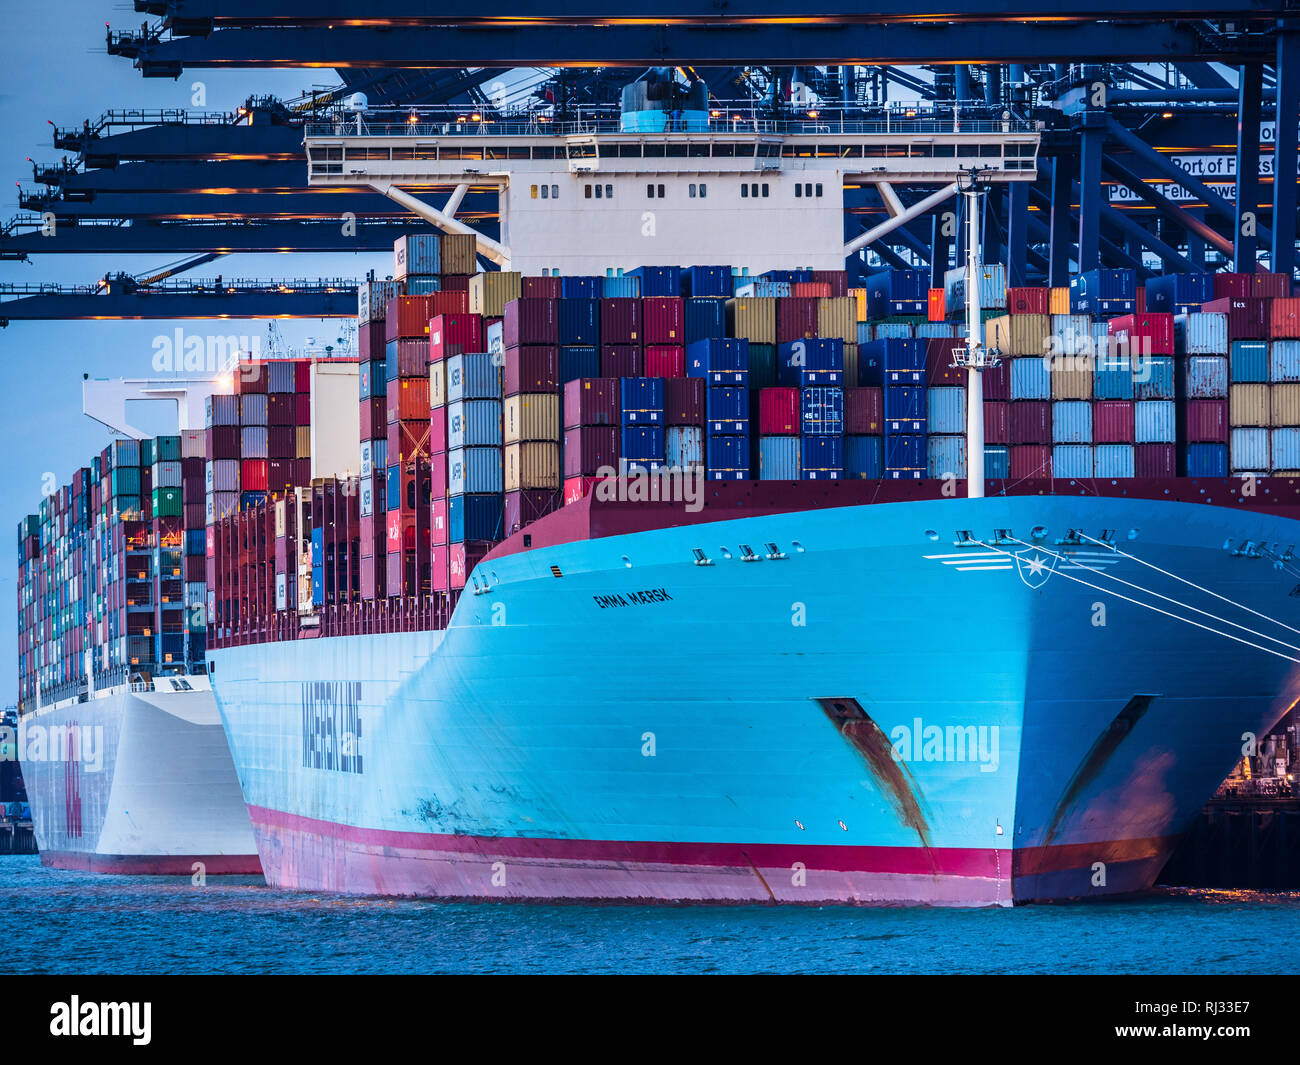 Commerce - porte-conteneurs Maersk Line Emma Maersk charge et décharge des conteneurs dans le port de Felixstowe, le plus important port à conteneurs du Royaume-Uni Banque D'Images